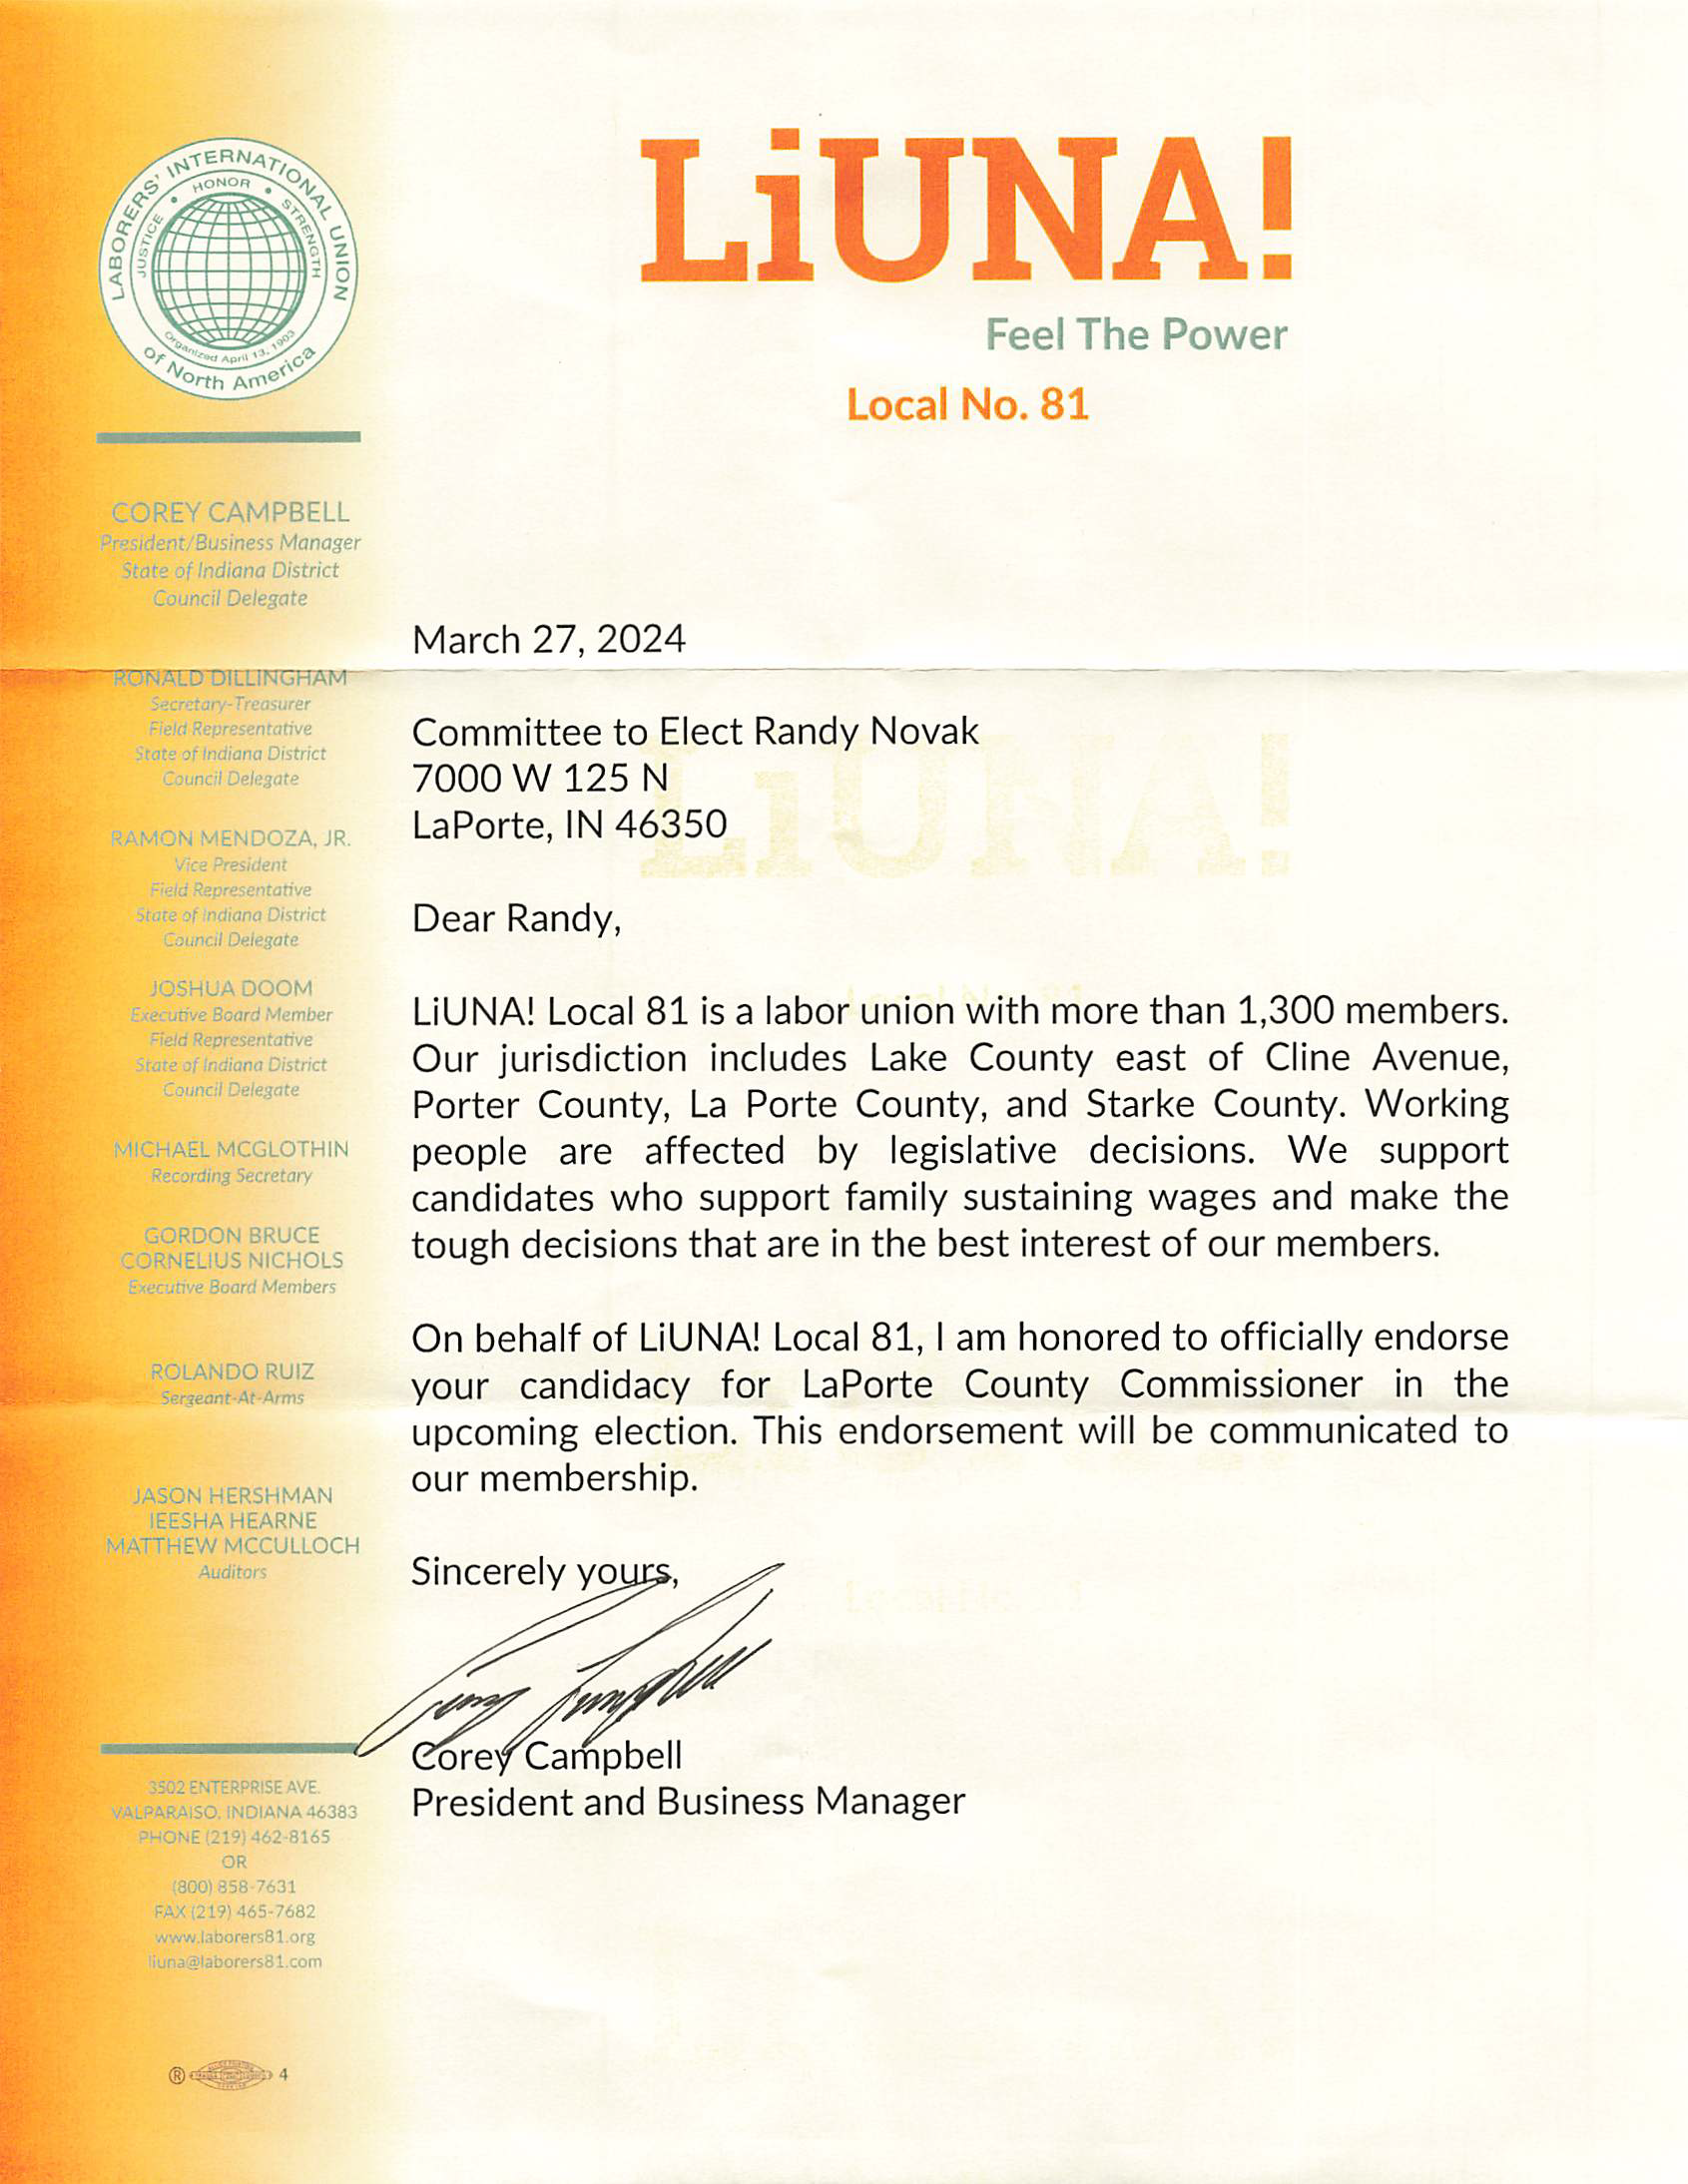 LIUNA endorsement letter